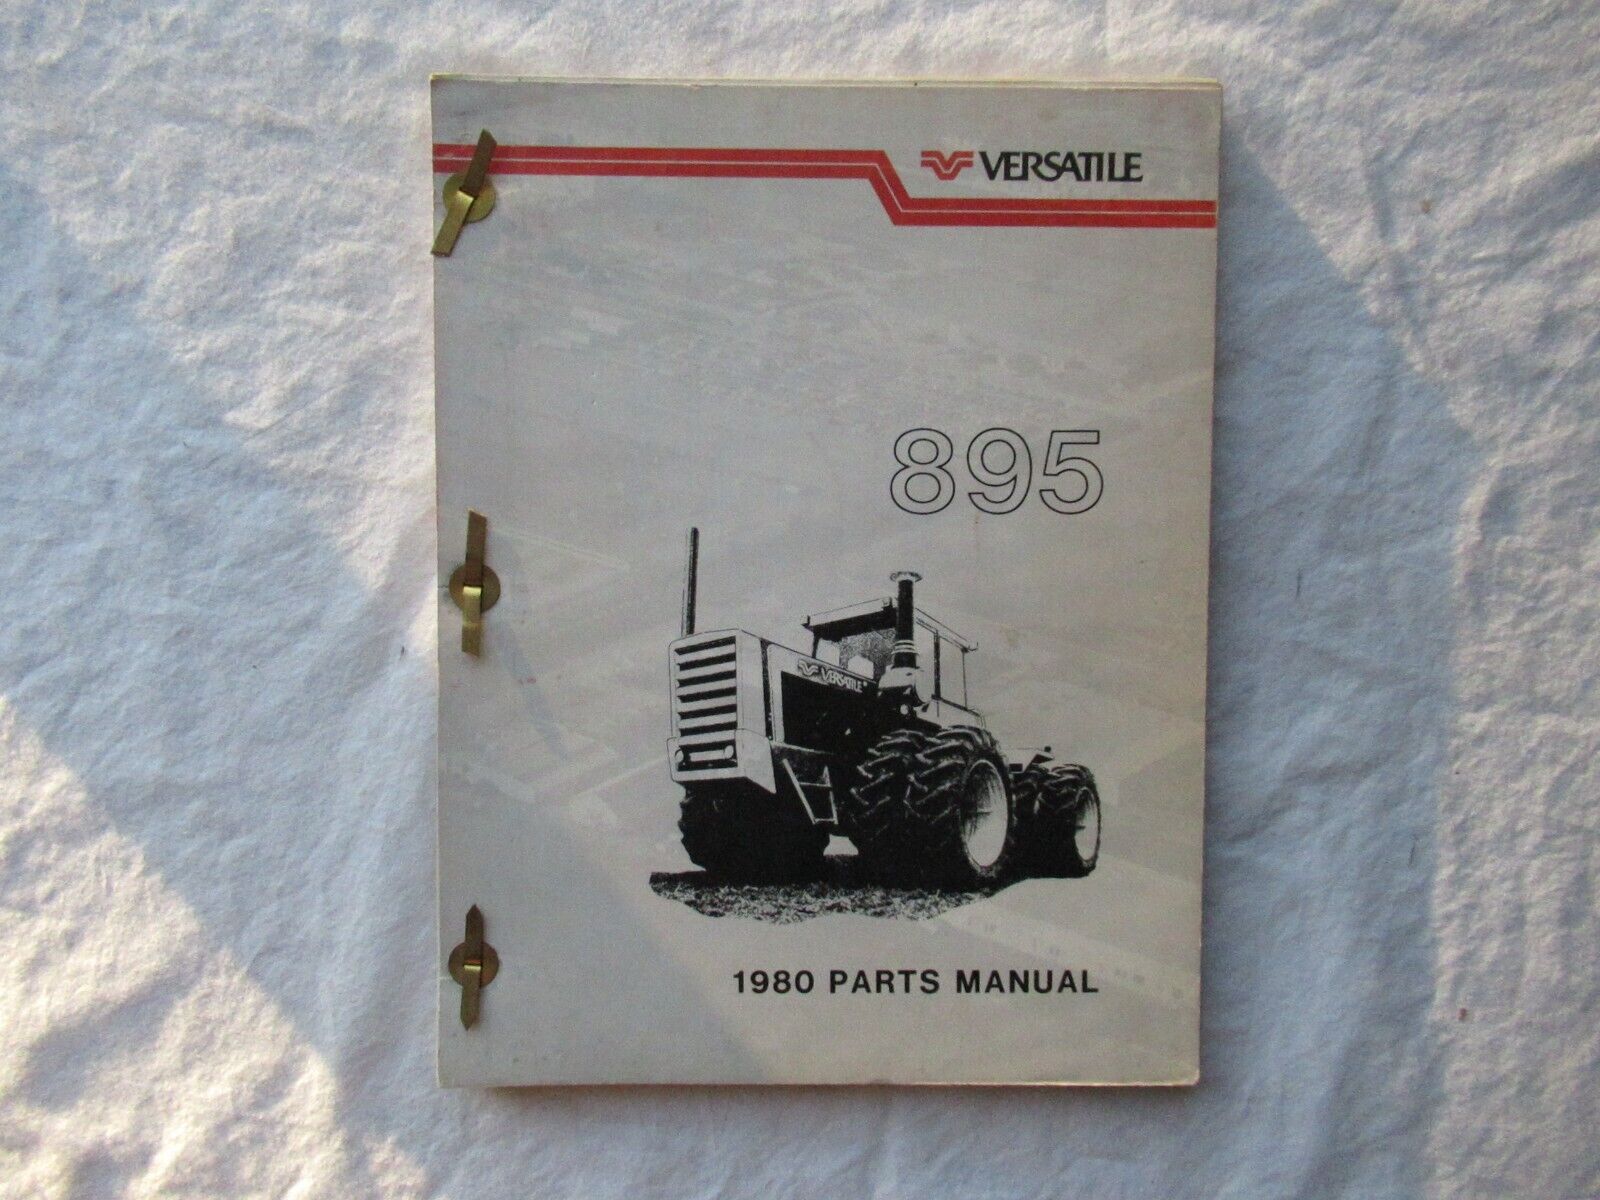 1980 Versatile 895 4WD Tractor Parts Manual Catalog Book Original